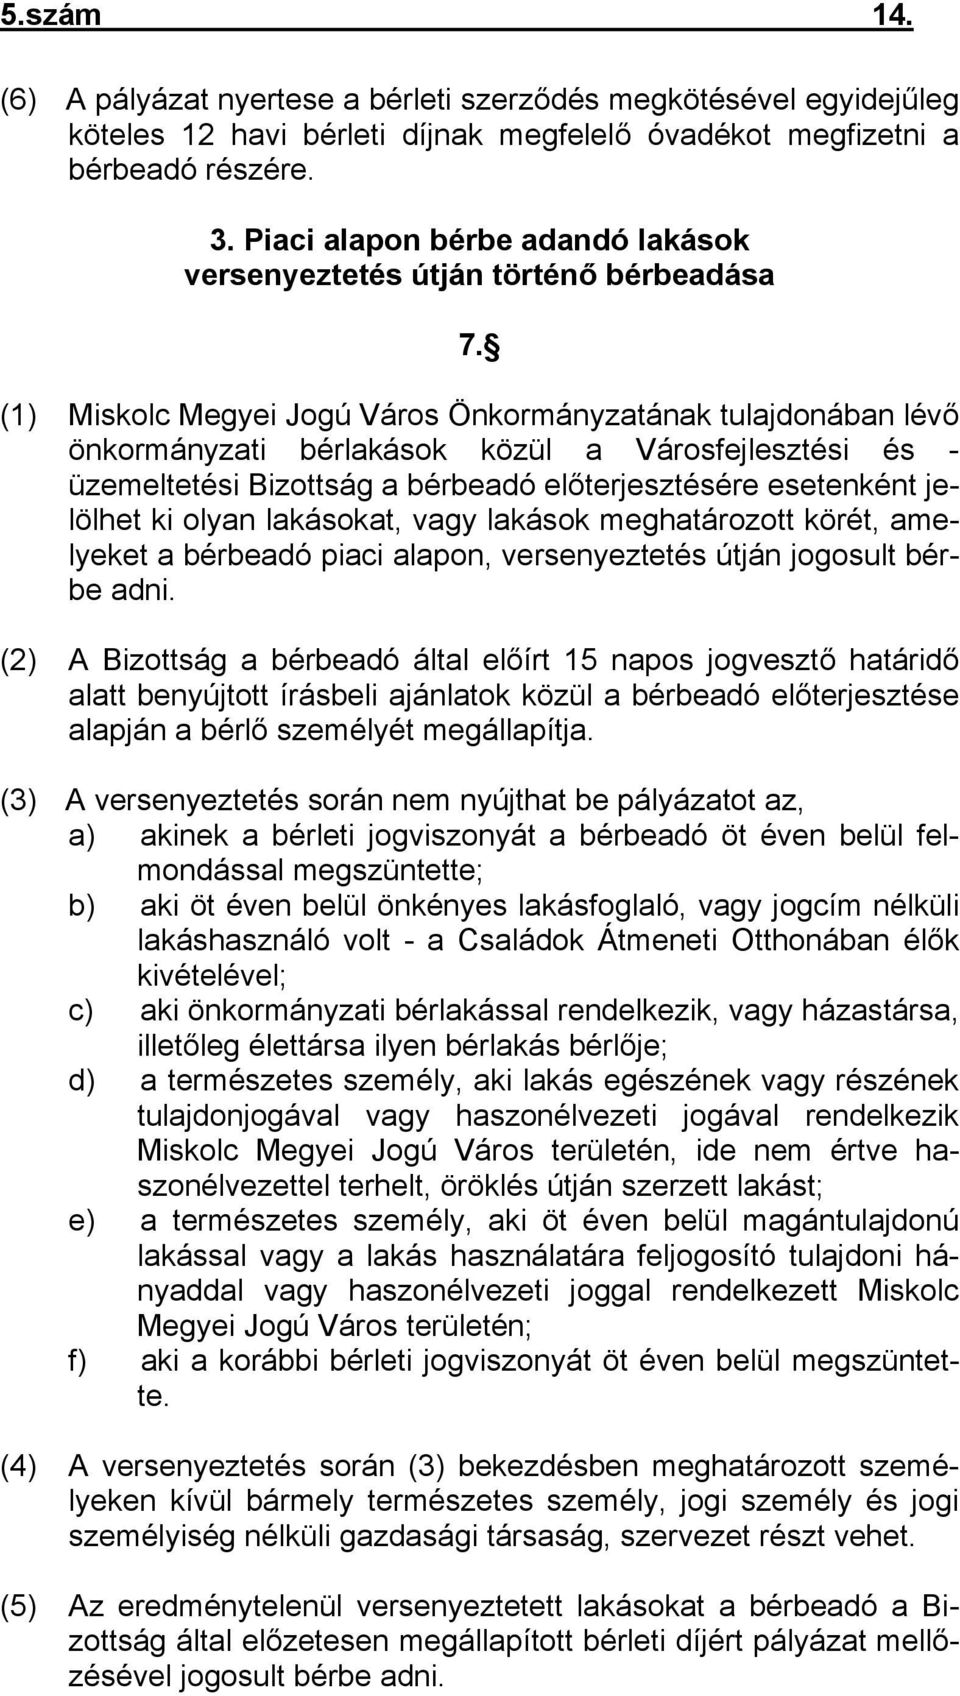 (1) Miskolc Megyei Jogú Város Önkormányzatának tulajdonában lévő önkormányzati bérlakások közül a Városfejlesztési és - üzemeltetési Bizottság a bérbeadó előterjesztésére esetenként jelölhet ki olyan